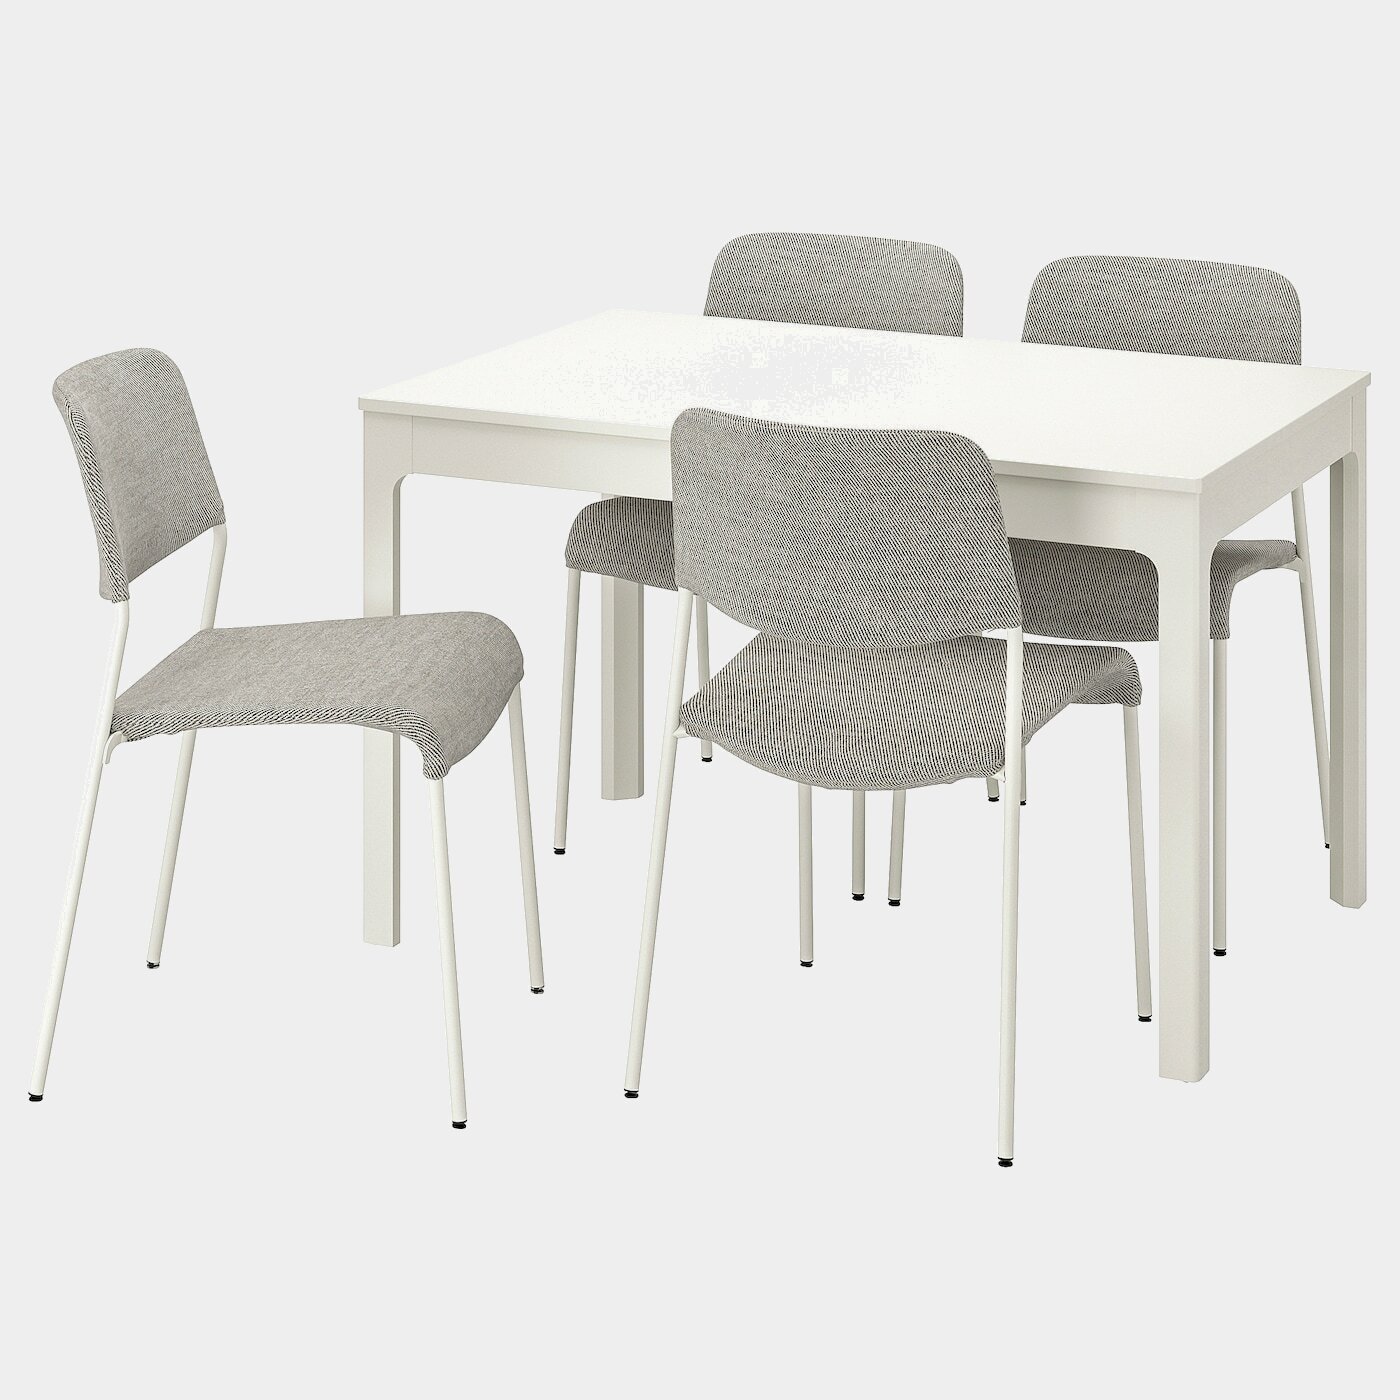 EKEDALEN / UDMUND Tisch und 4 Stühle  -  - Möbel Ideen für dein Zuhause von Home Trends. Möbel Trends von Social Media Influencer für dein Skandi Zuhause.